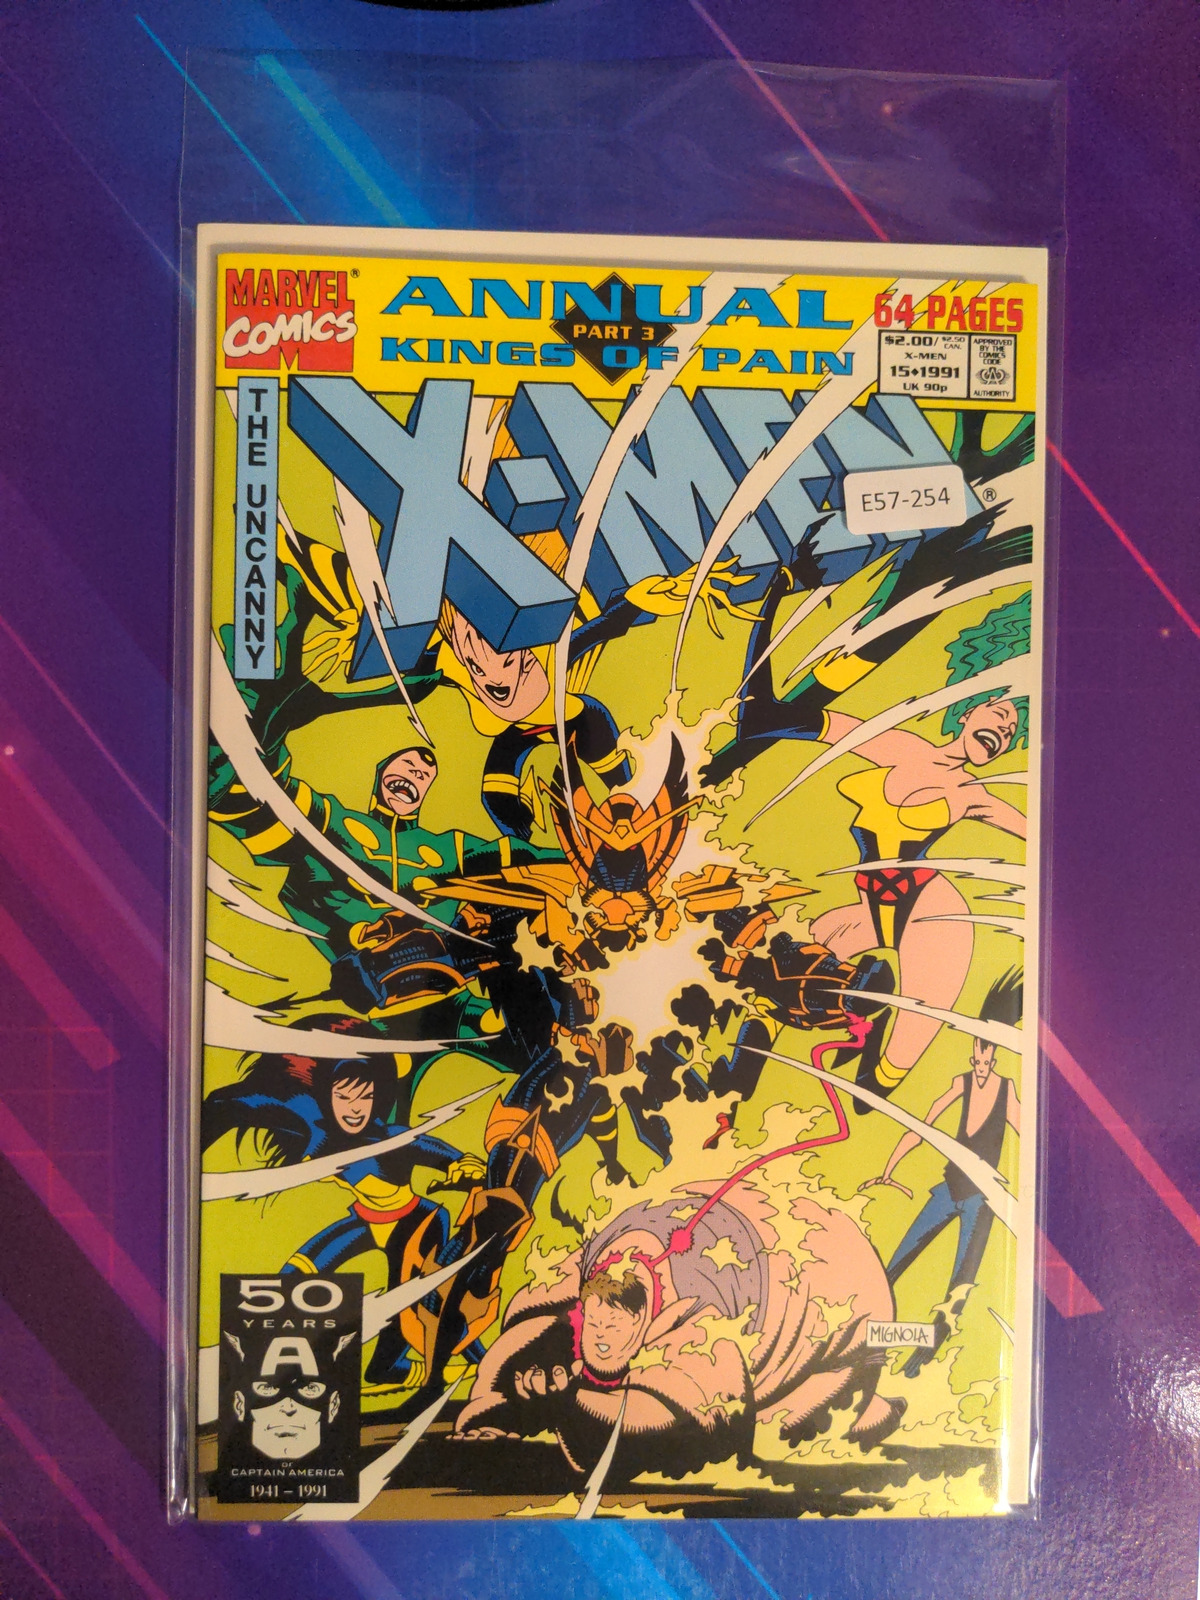 X-MEN ANNUAL #15 VOL. 1 9.0 MARVEL ANNUAL BOOK E57-254